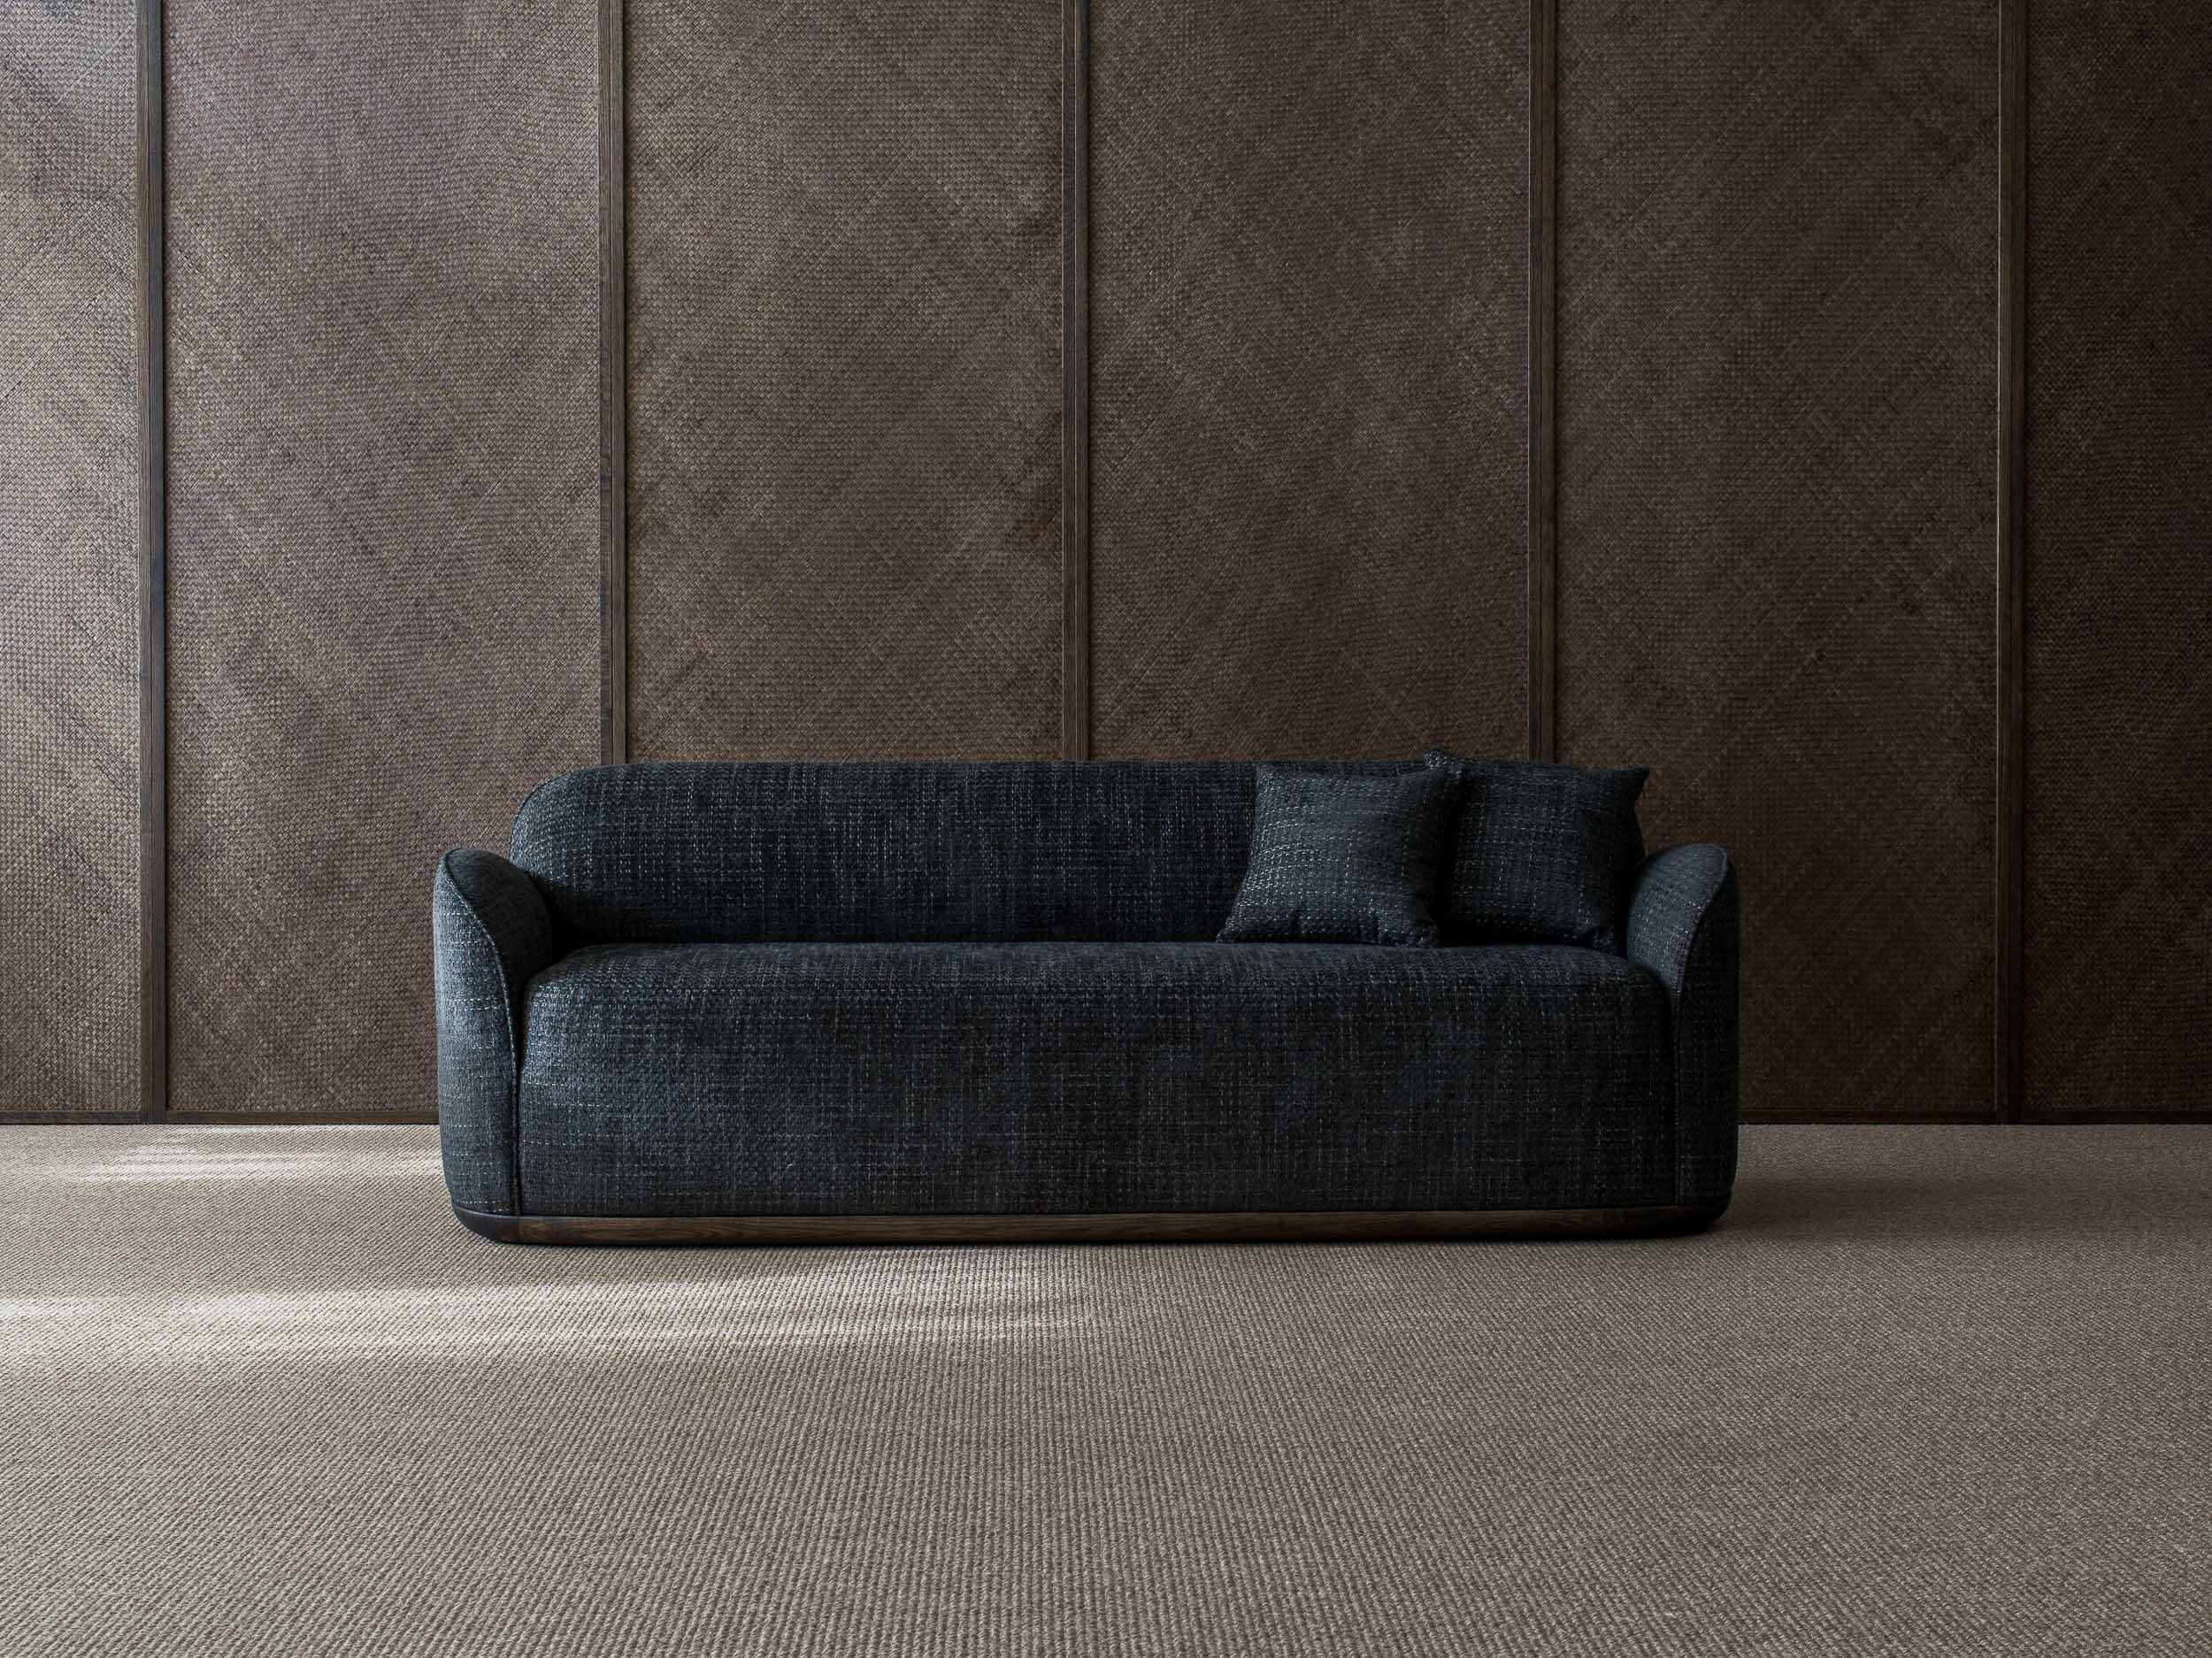 Unio 3 - sitzendes sofa von Poiat 
Entwerfer: Timo Mikkonen & Antti Rouhunkoski 

Collection UNIO 2021

Abmessungen: H. 72 x B. 200 T. 72 SH. 40
Abgebildetes Modell: Kat. 2. Larsen - Fox 02 
 
Mit der Unio Collection, die einen Sessel und